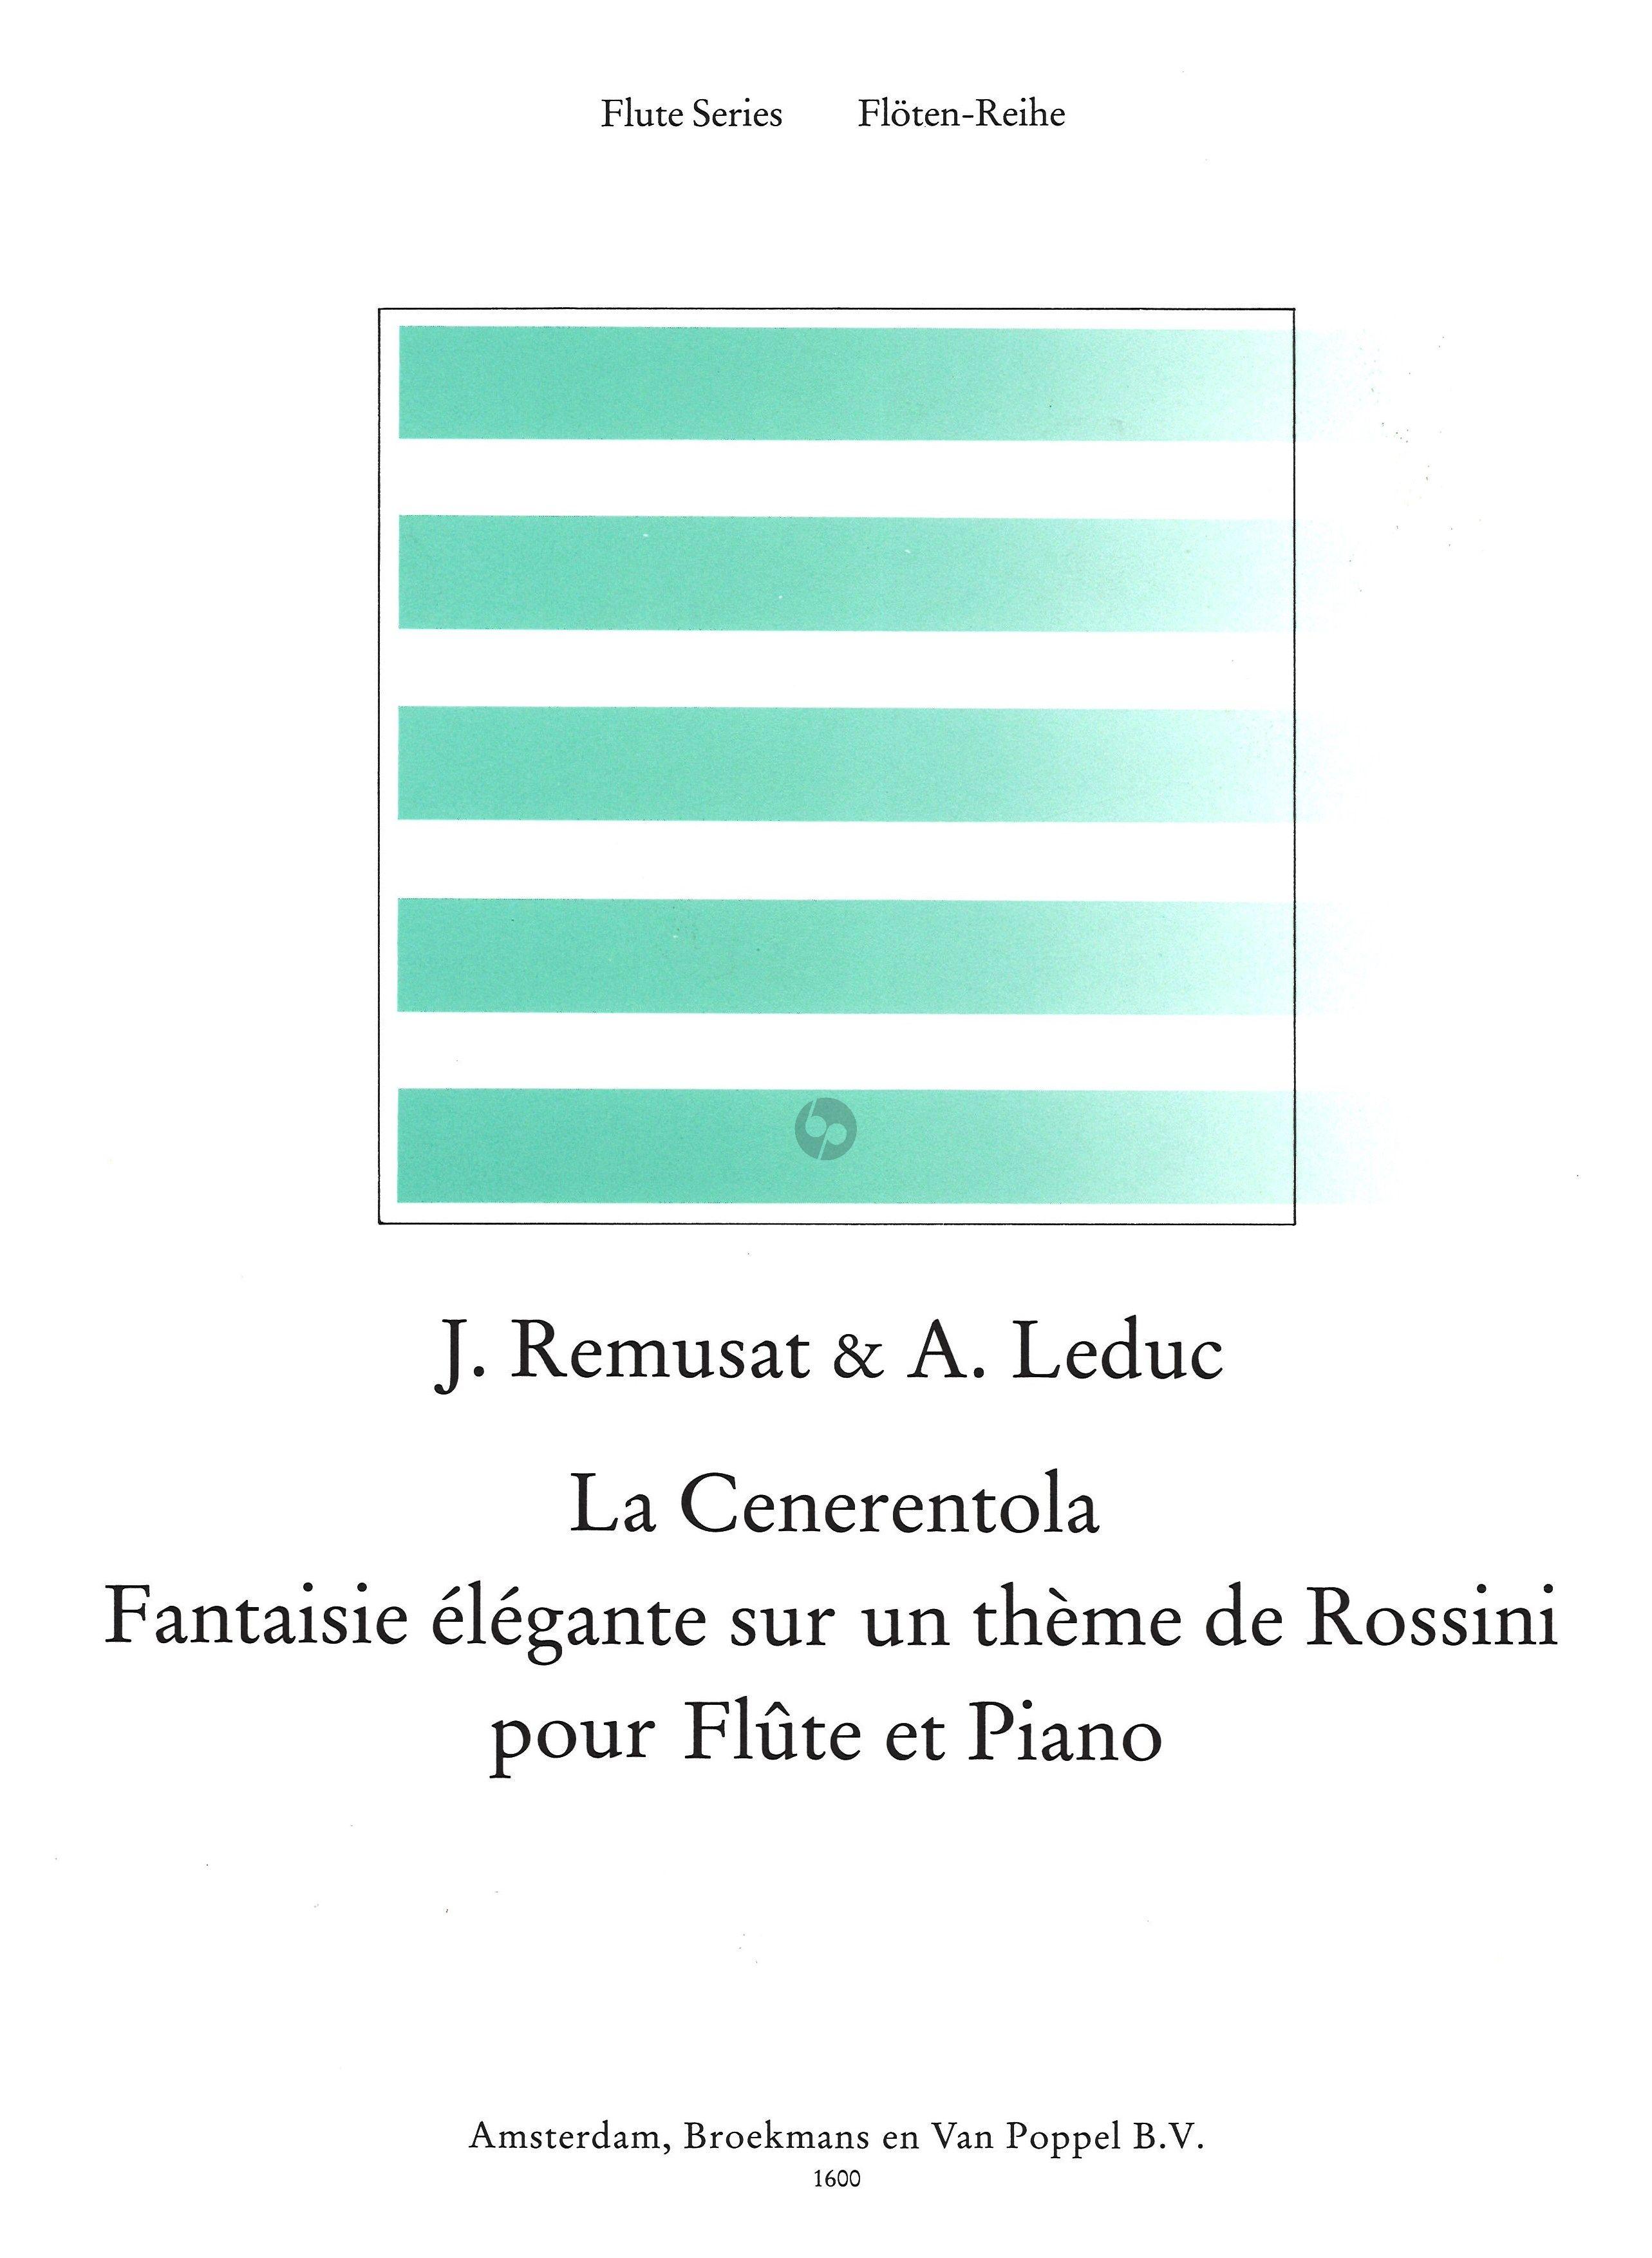 La Cenerentola, Fantaisie Elégante sur un Thème de Rossini - Alphonse Leduc_Jean Remusat | Suono Flauti